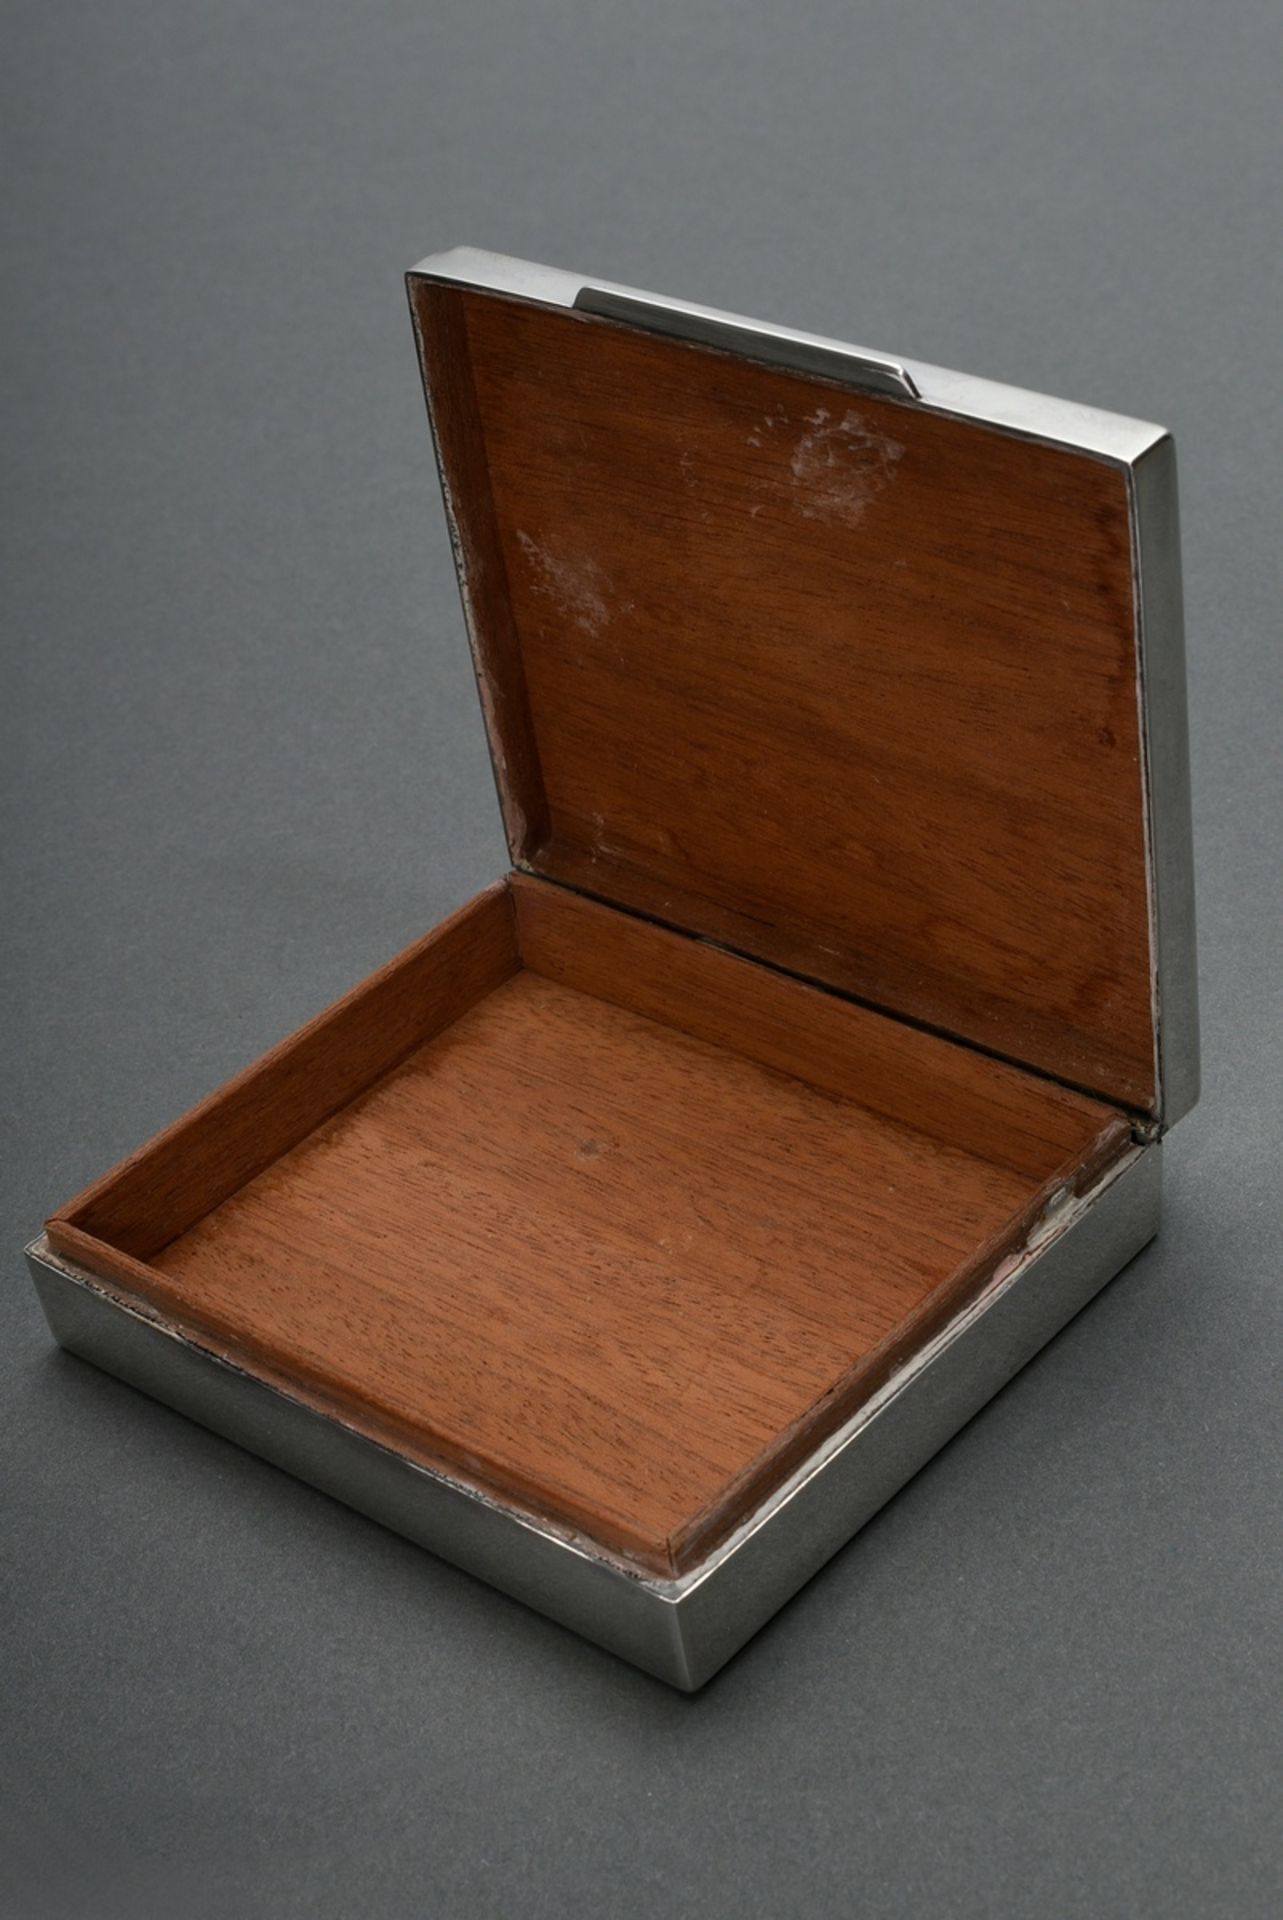 Rechteckige Zigarettendose in schlichter Façon, MZ: Kurz Gottlieb, Silber 925 mit Holz Interieur, 1 - Bild 3 aus 4